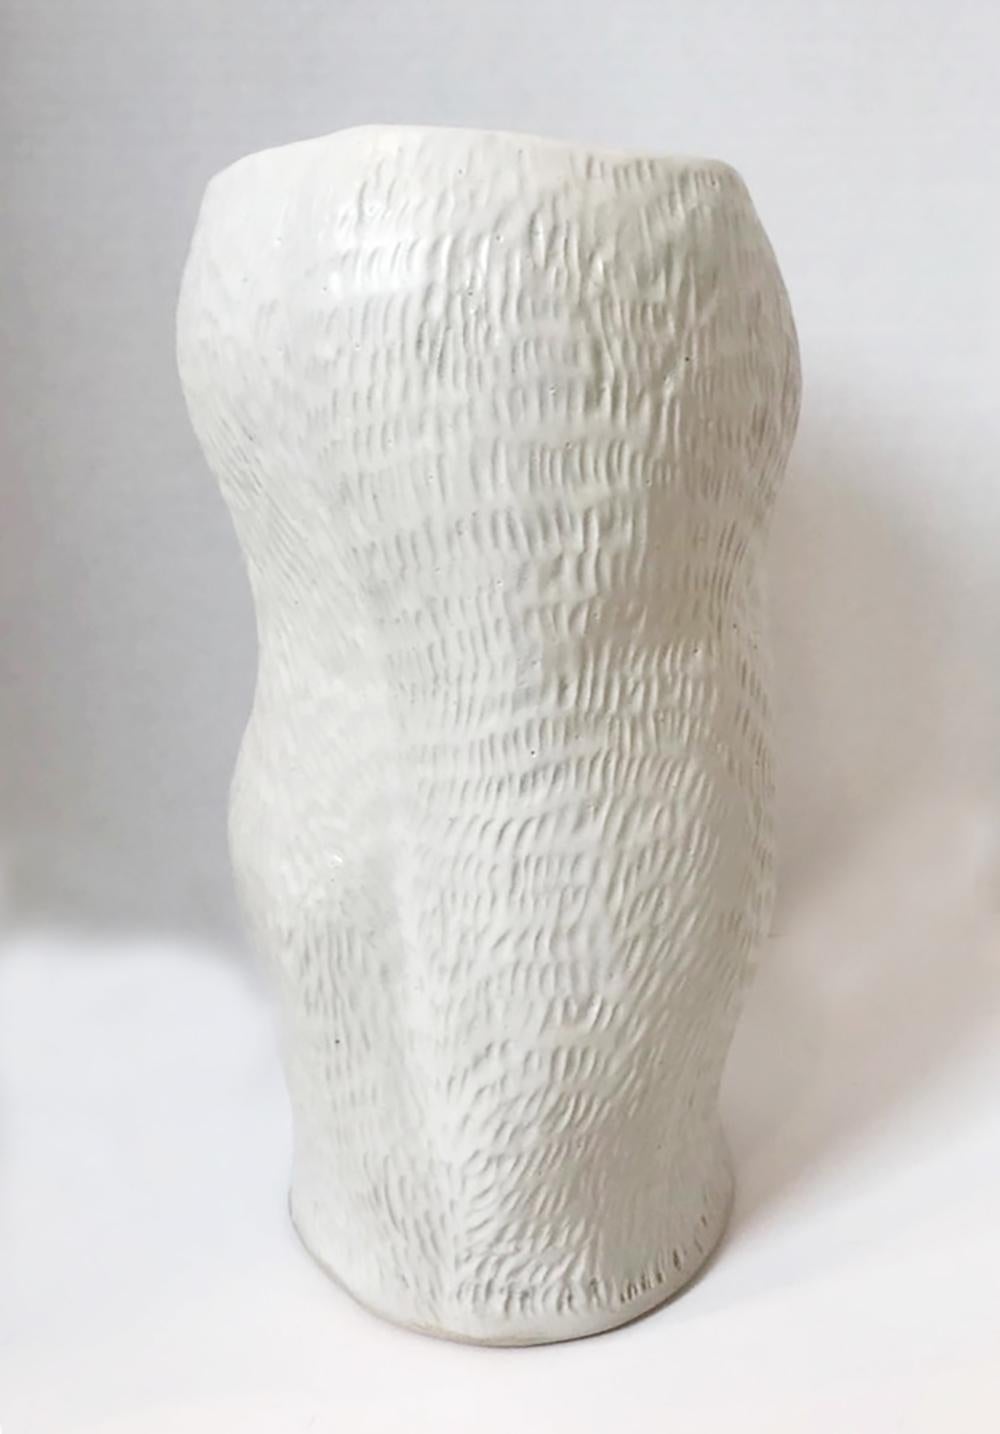 Trish DeMasi
Camille Vessel, 2020
Keramisch glasiert
13.5 x 6,5 x 6,5 Zoll

Dieses weiß glasierte Keramikgefäß der Künstlerin Trish DeMasi aus Philadelphia hat eine feine Textur und eine wellenförmige Form. Es ist die perfekte Ergänzung für ein